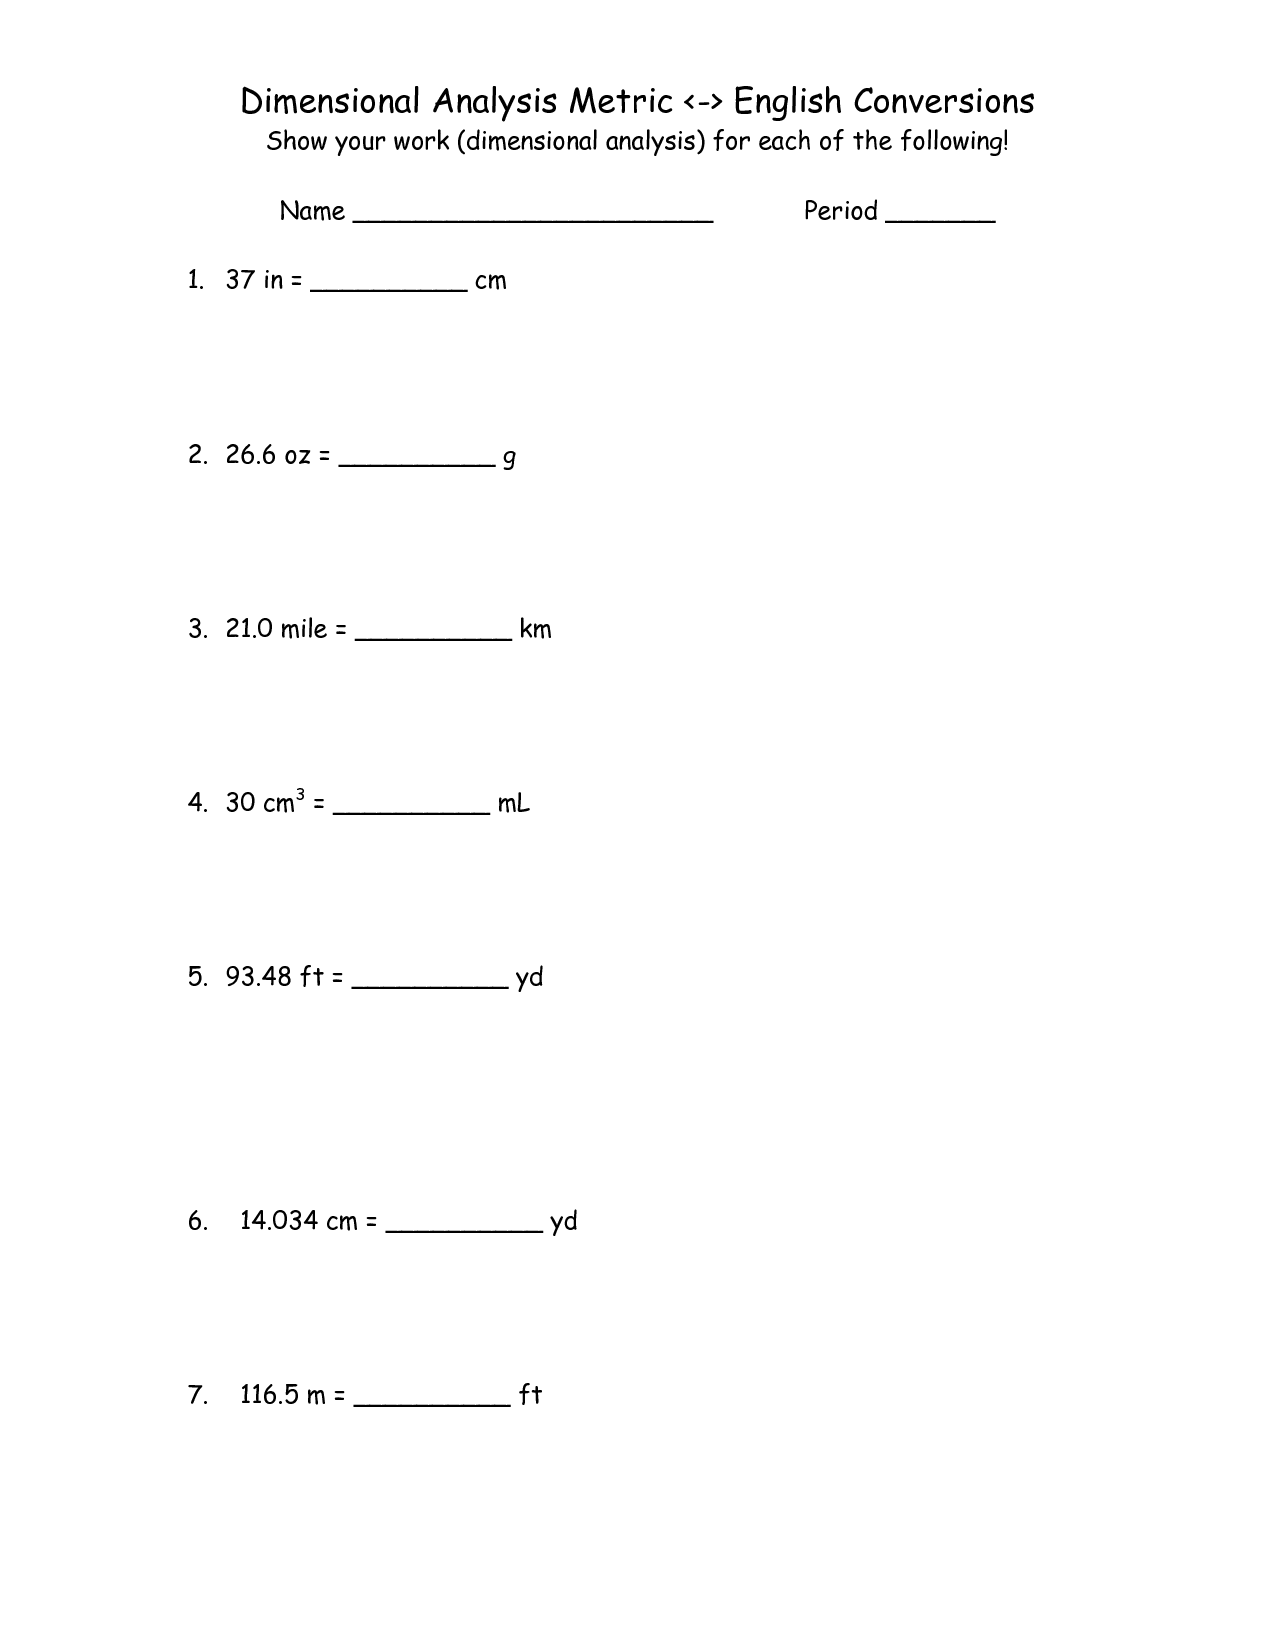 English Metric Conversion Worksheet Image